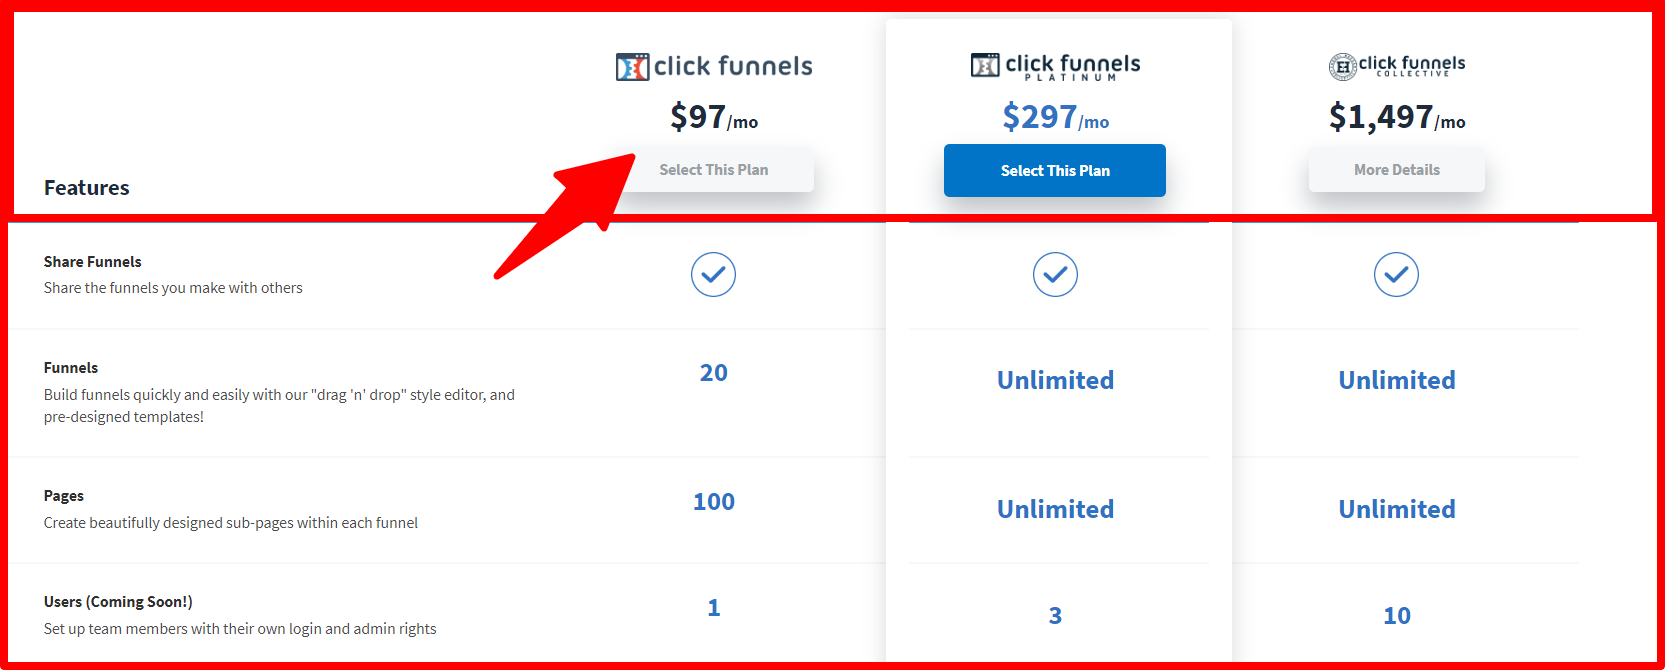 engagebay vs clickfunnels - ClickFunnels Pricing